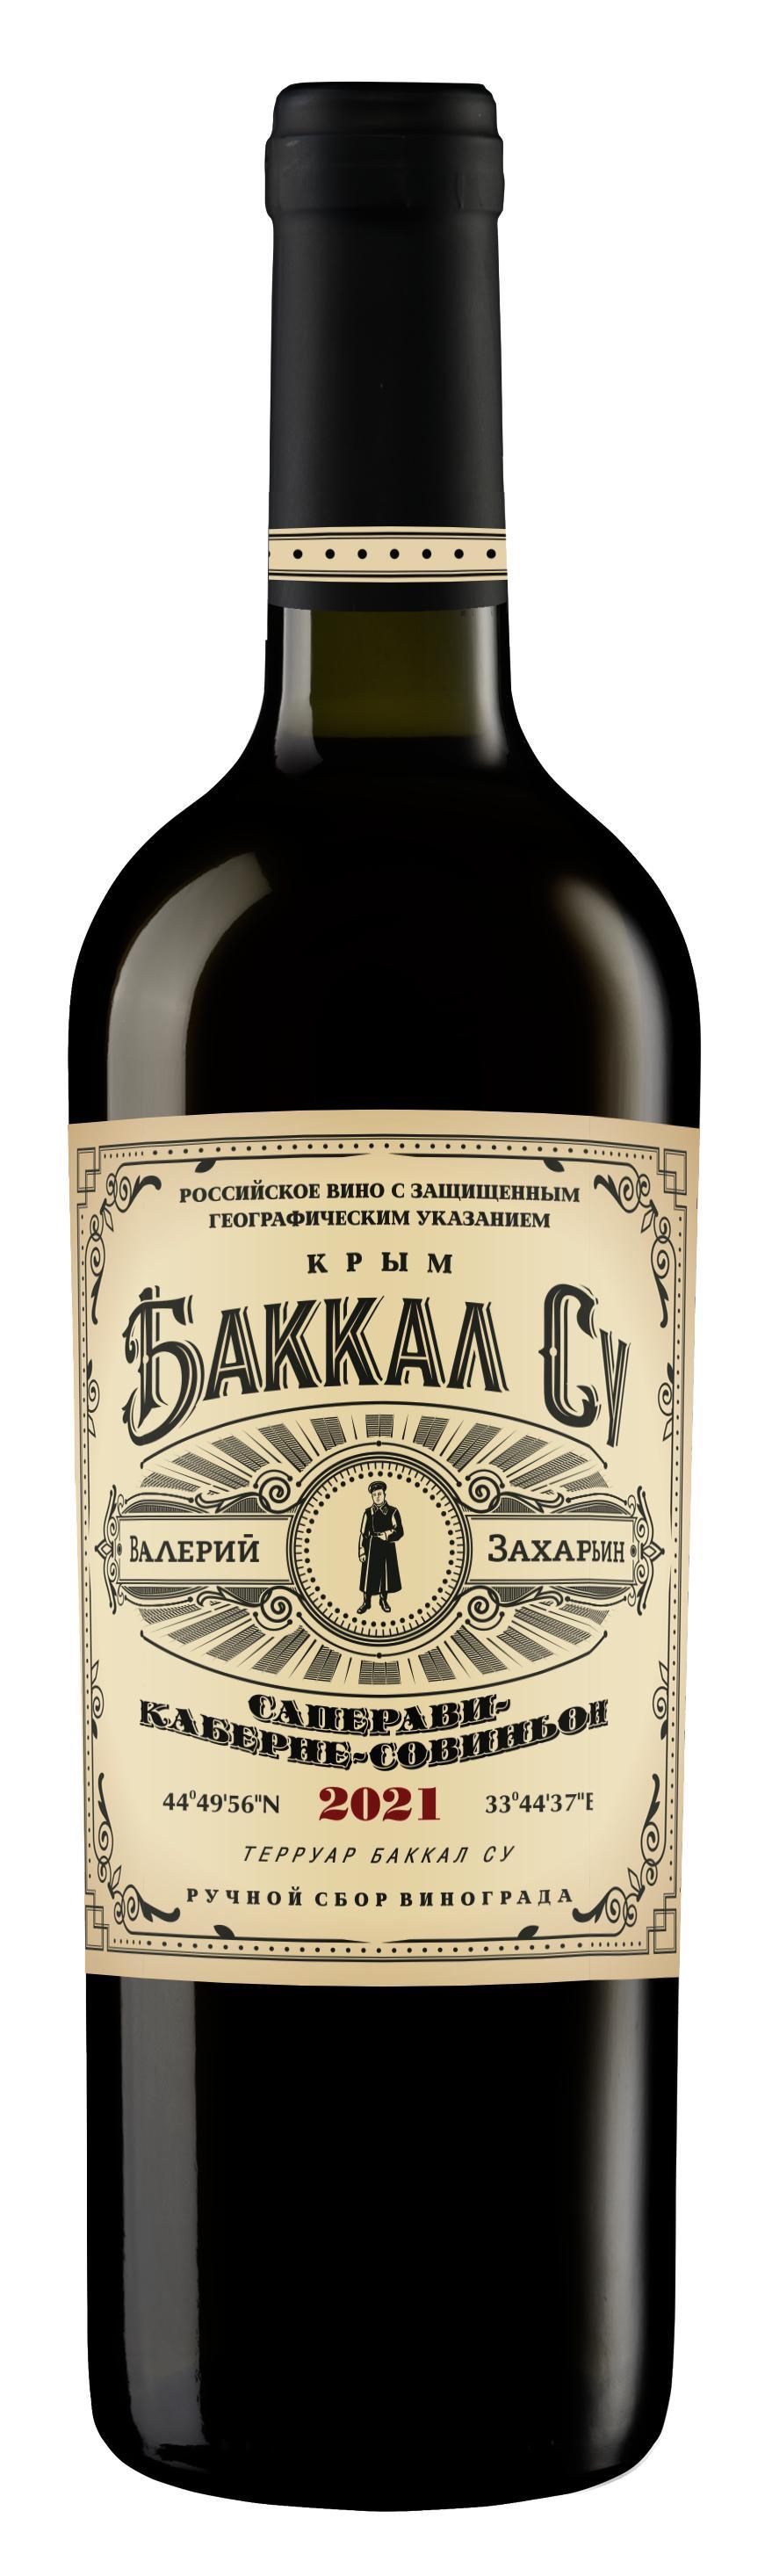 Вино с ЗГУ Баккал Су Саперави-Каберне-Совиньон красное сухое 750мл, Винодельня Бурлюк